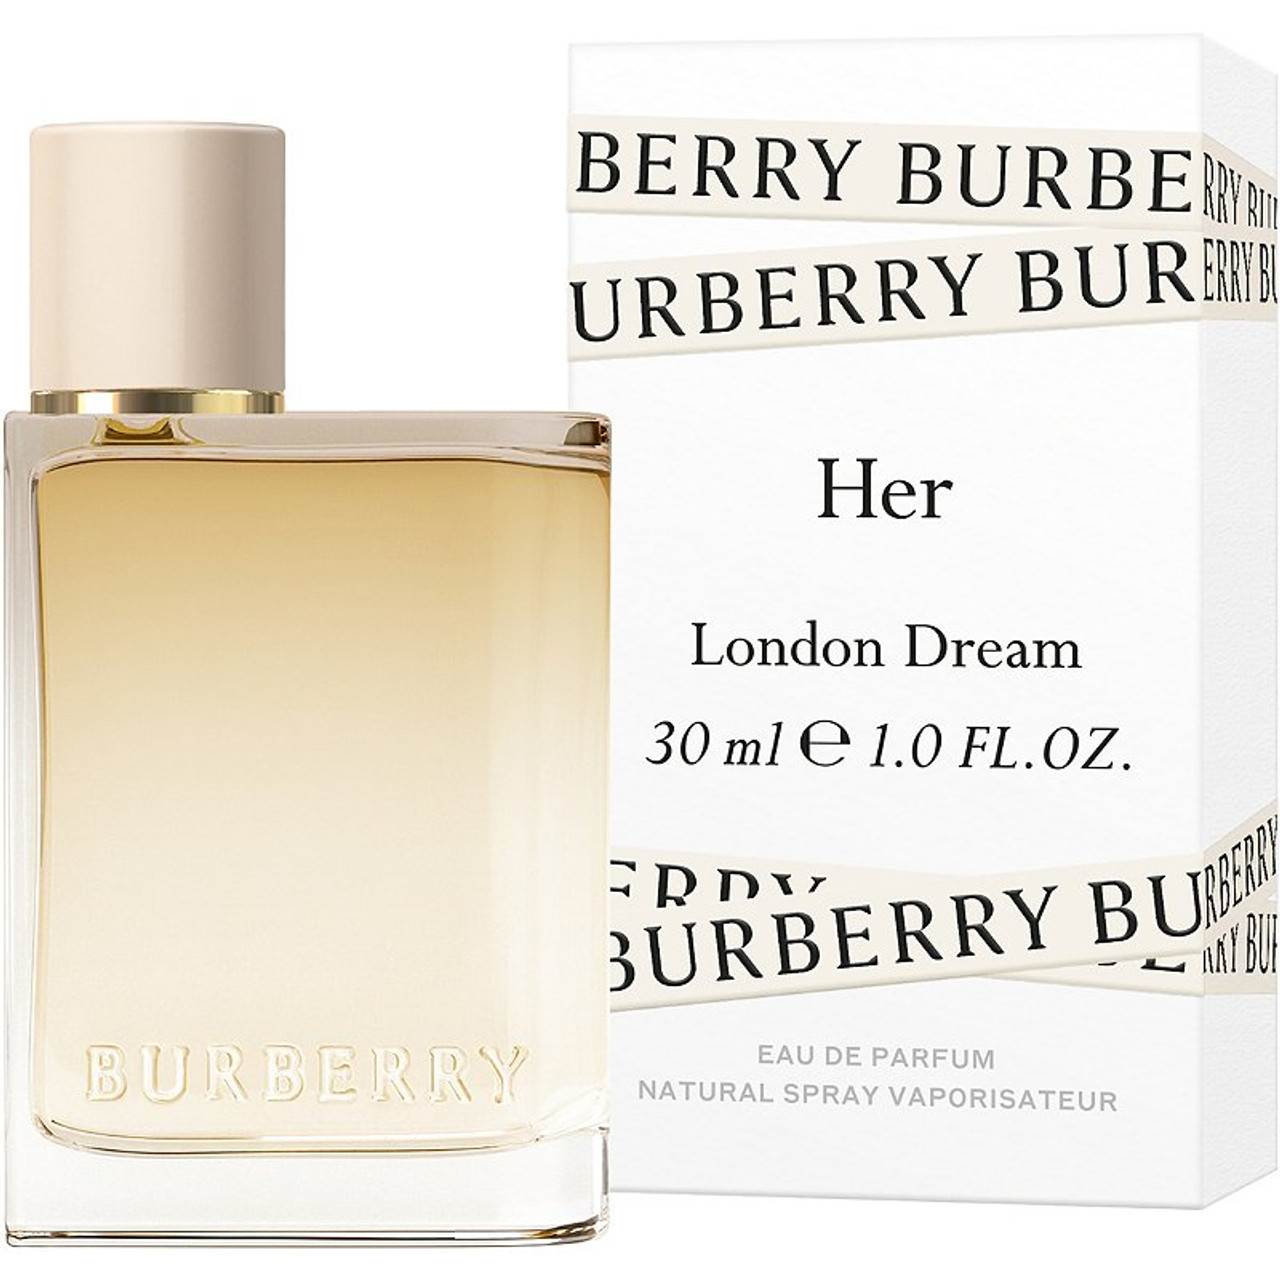 BURBERRY - Burberry Her London Dream Eau de Parfum 1 oz. - Beauty Bridge